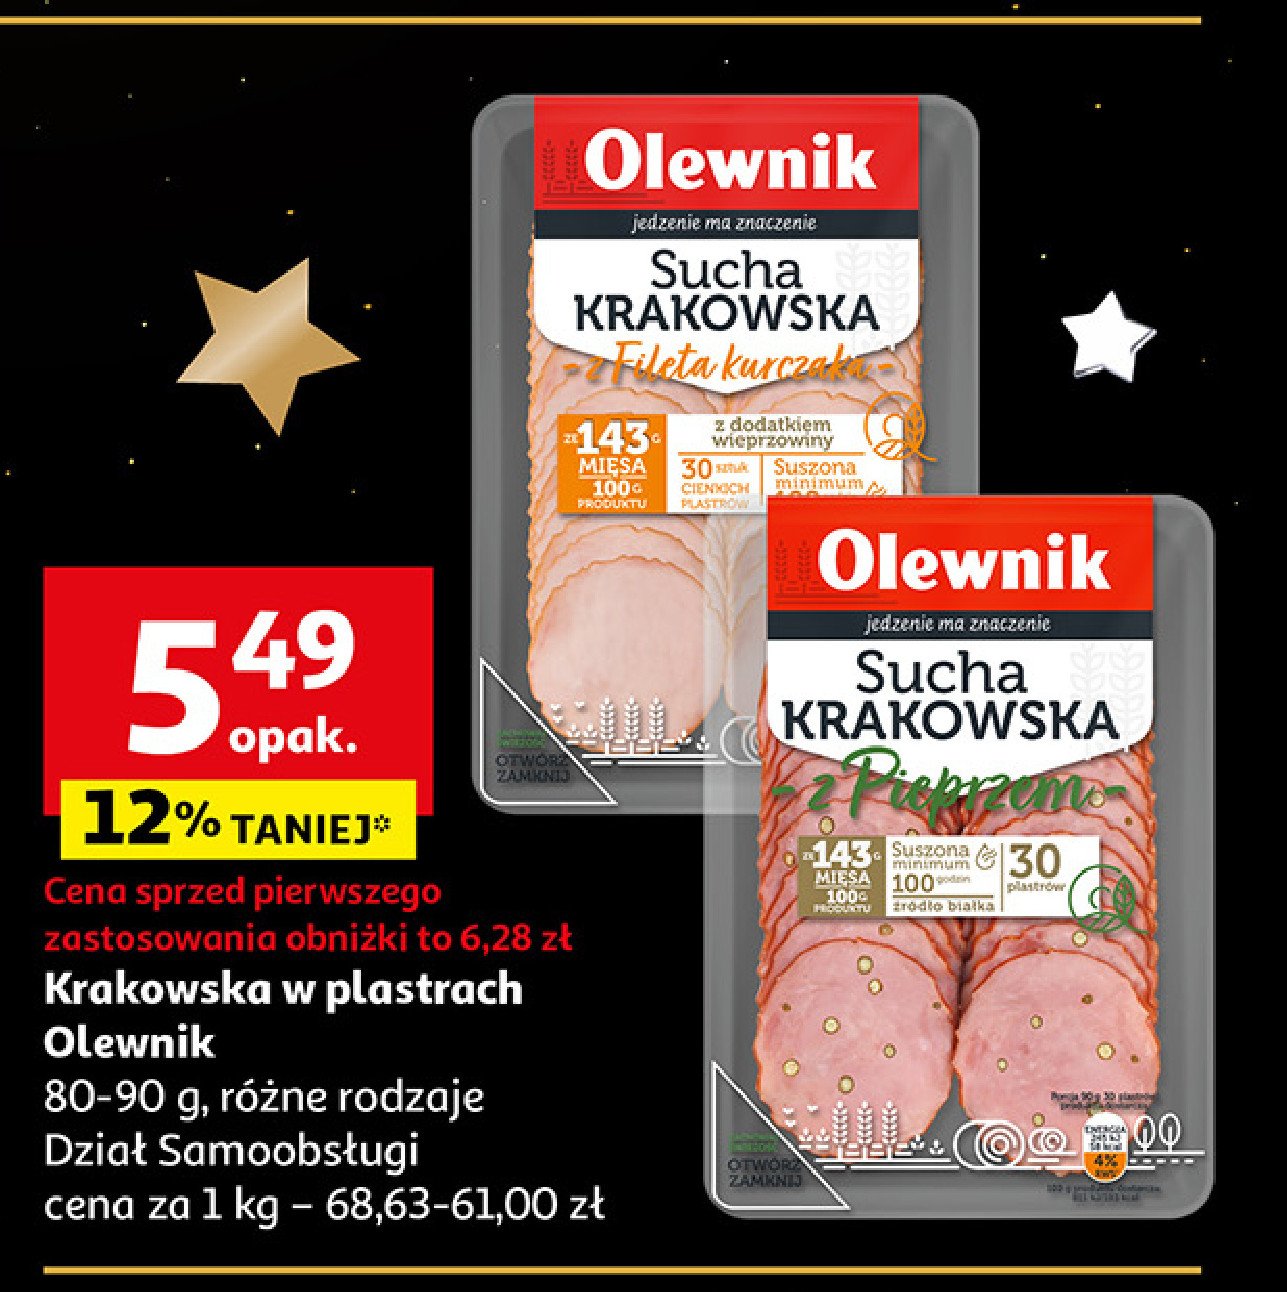 Kiełbasa krakowska sucha z szynki i z filetem z kurczaka Olewnik promocja